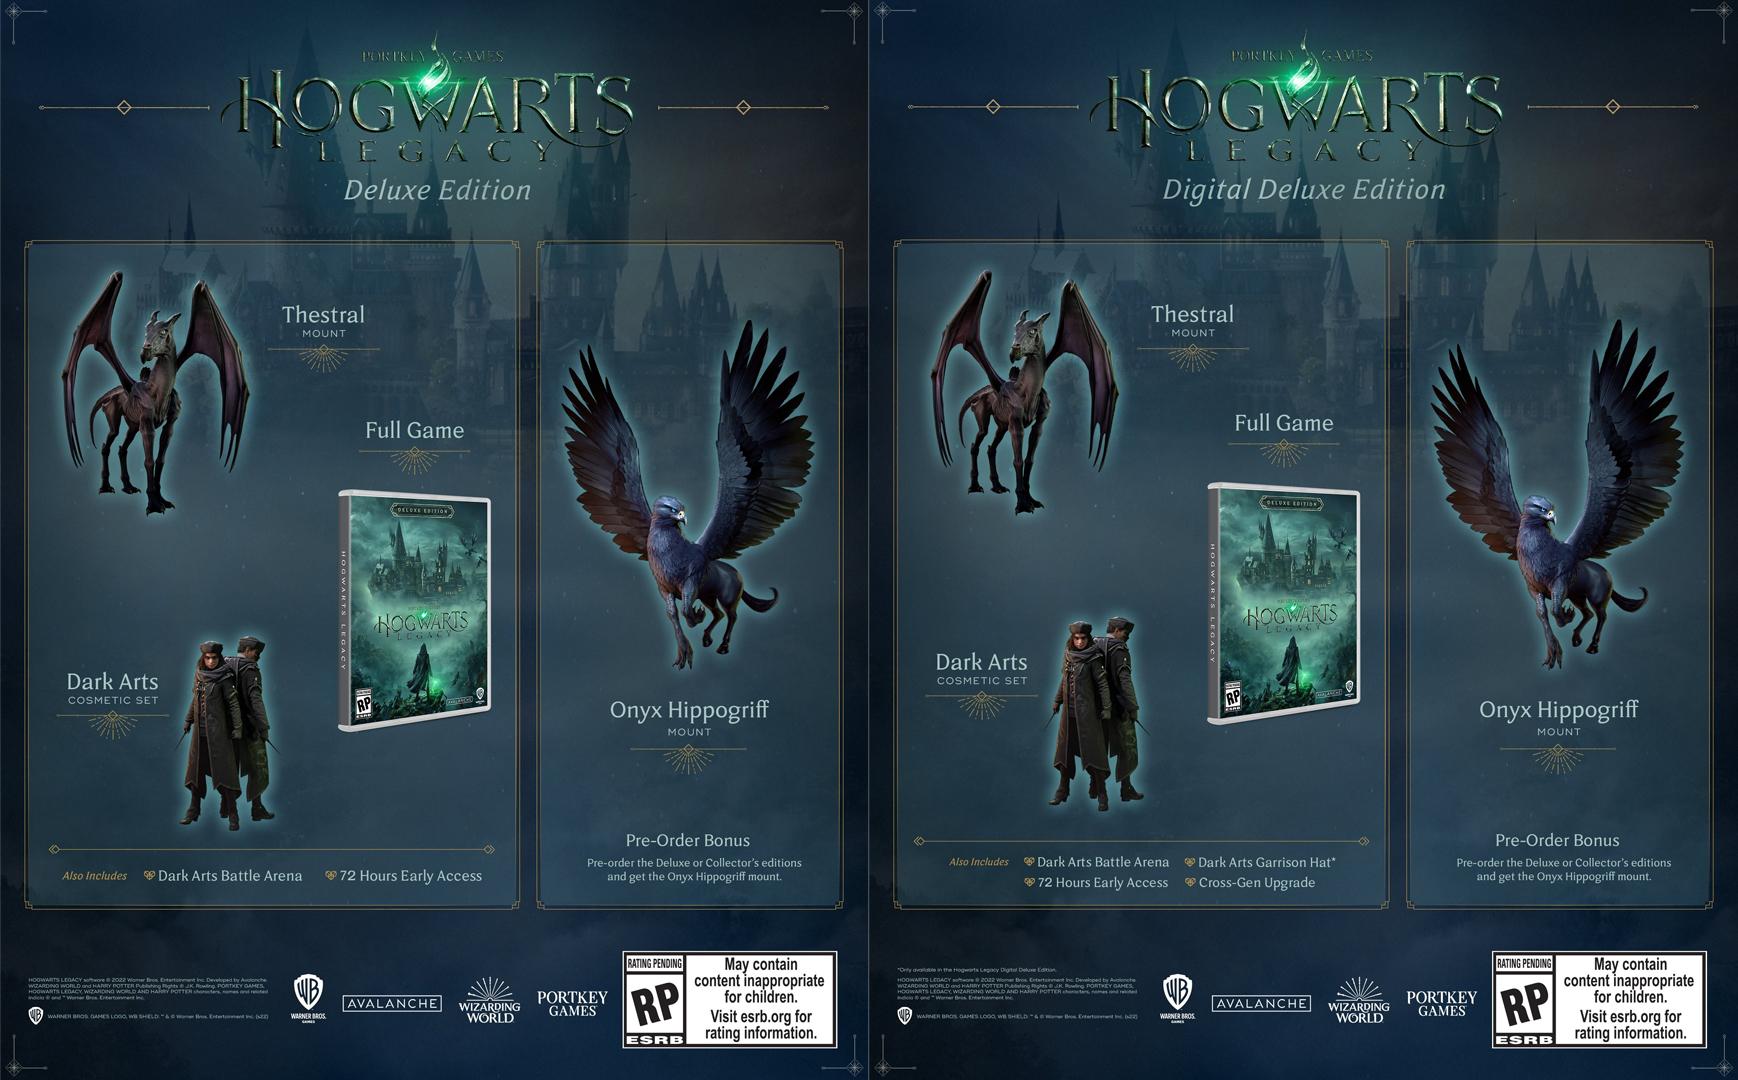 Tieto bonusy sa budú nachádzať v Deluxe a v Digital Deluxe edíciách Hogwarts Legacy.